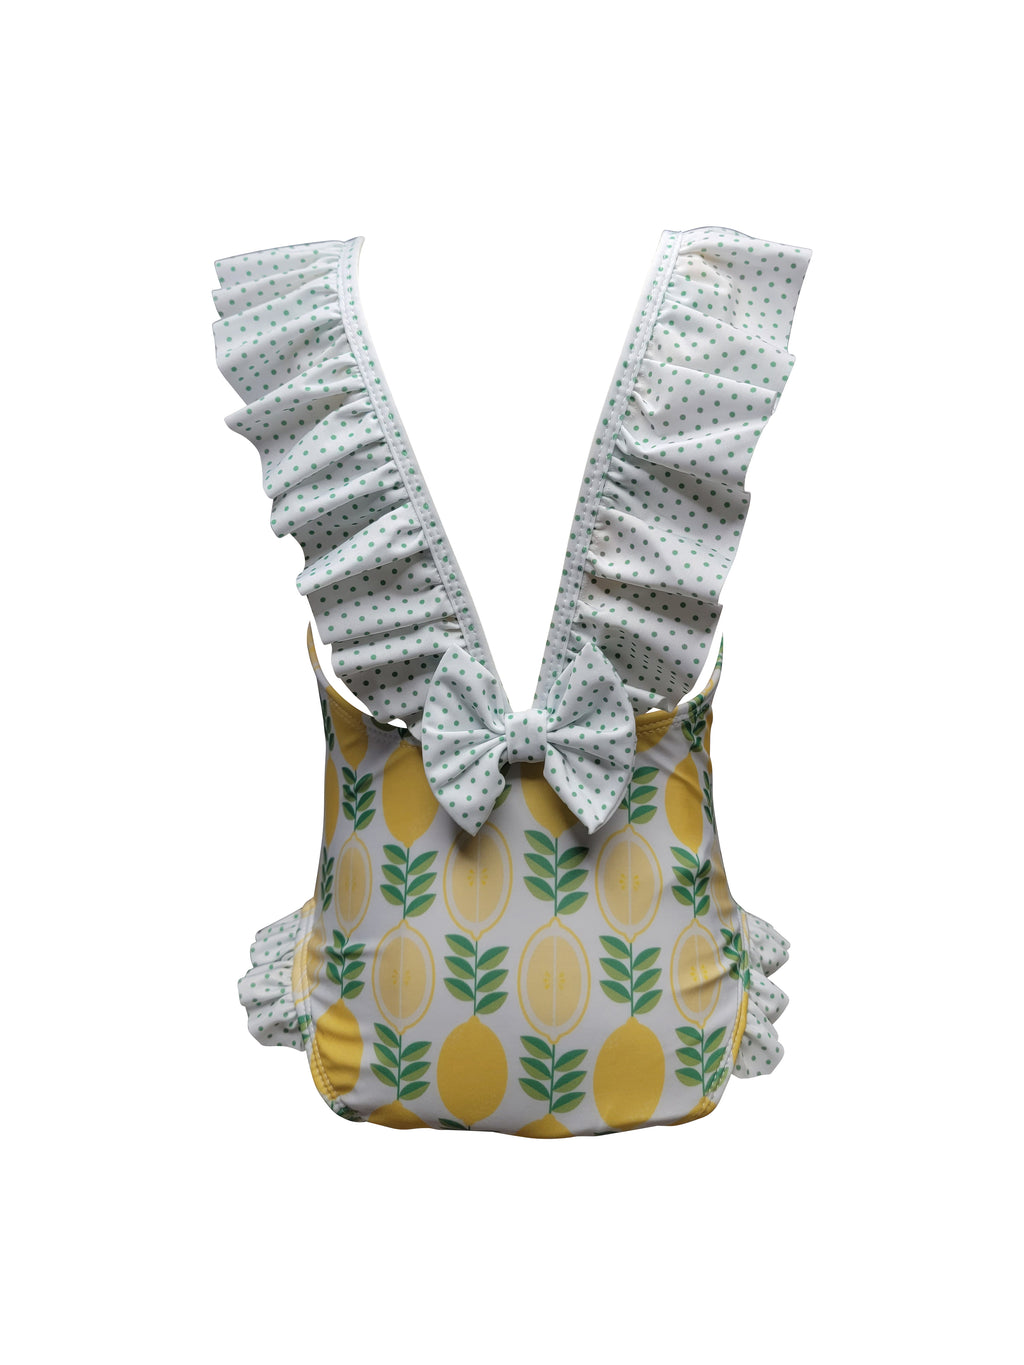 Girl's "Lemons" Swim suit - Little Threads Inc. Children's Clothing